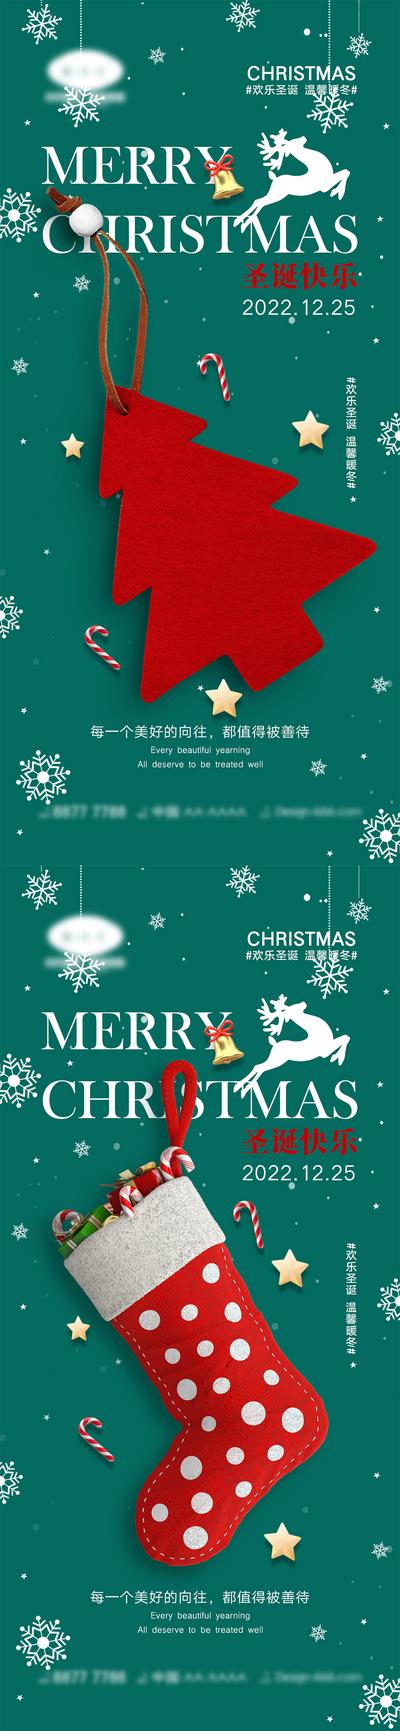 南门网 海报 海报 公历节日 圣诞节 平安夜 圣诞树 礼物 简约 西方国际节日